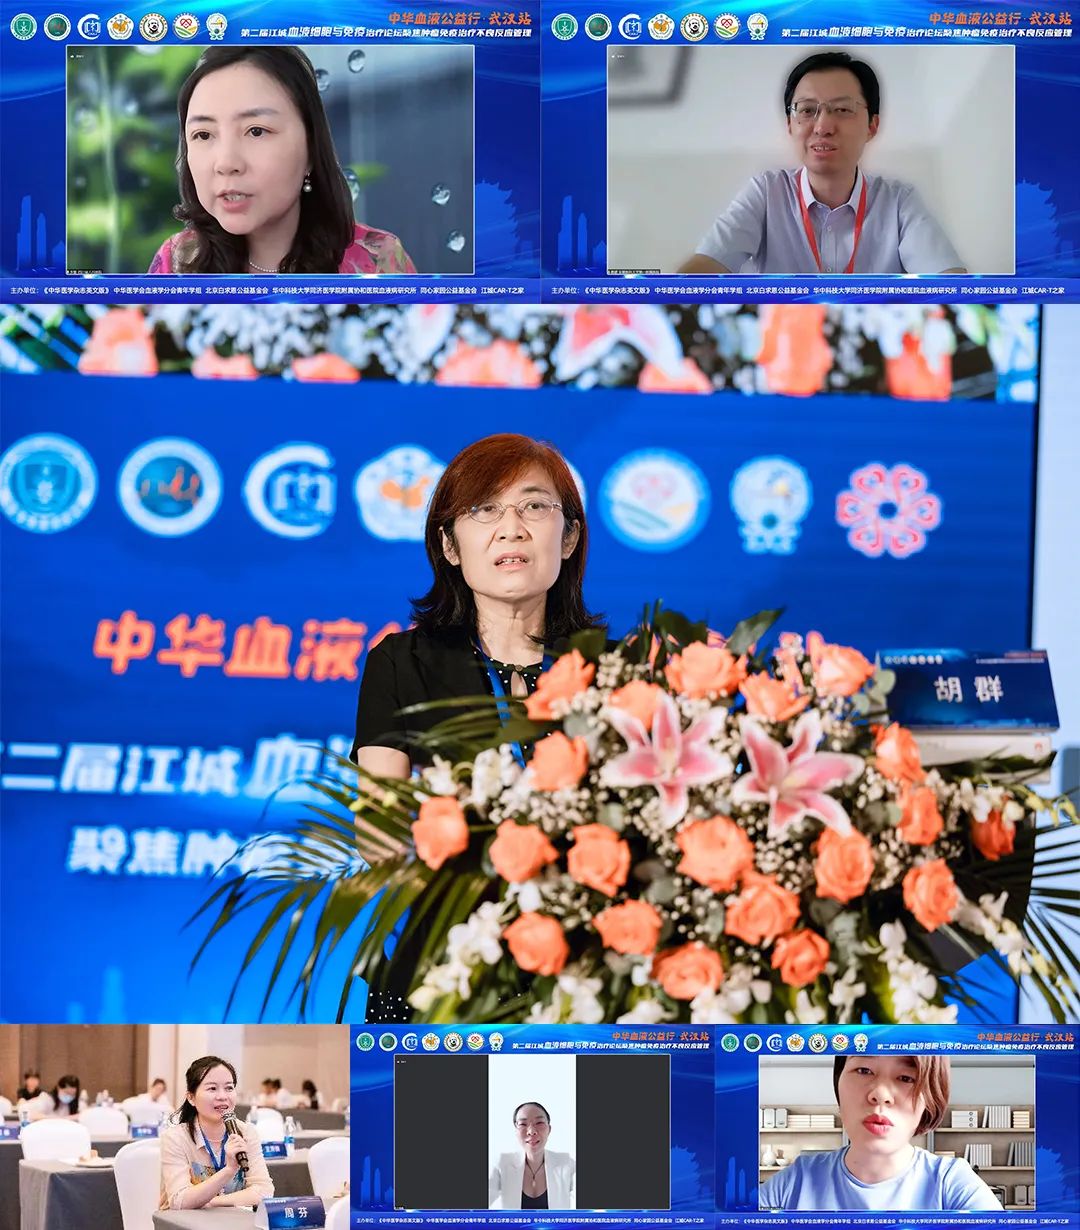 公益活动 | 中华血液公益行武汉站暨第二届江城血液细胞与免疫治疗论坛成功举行